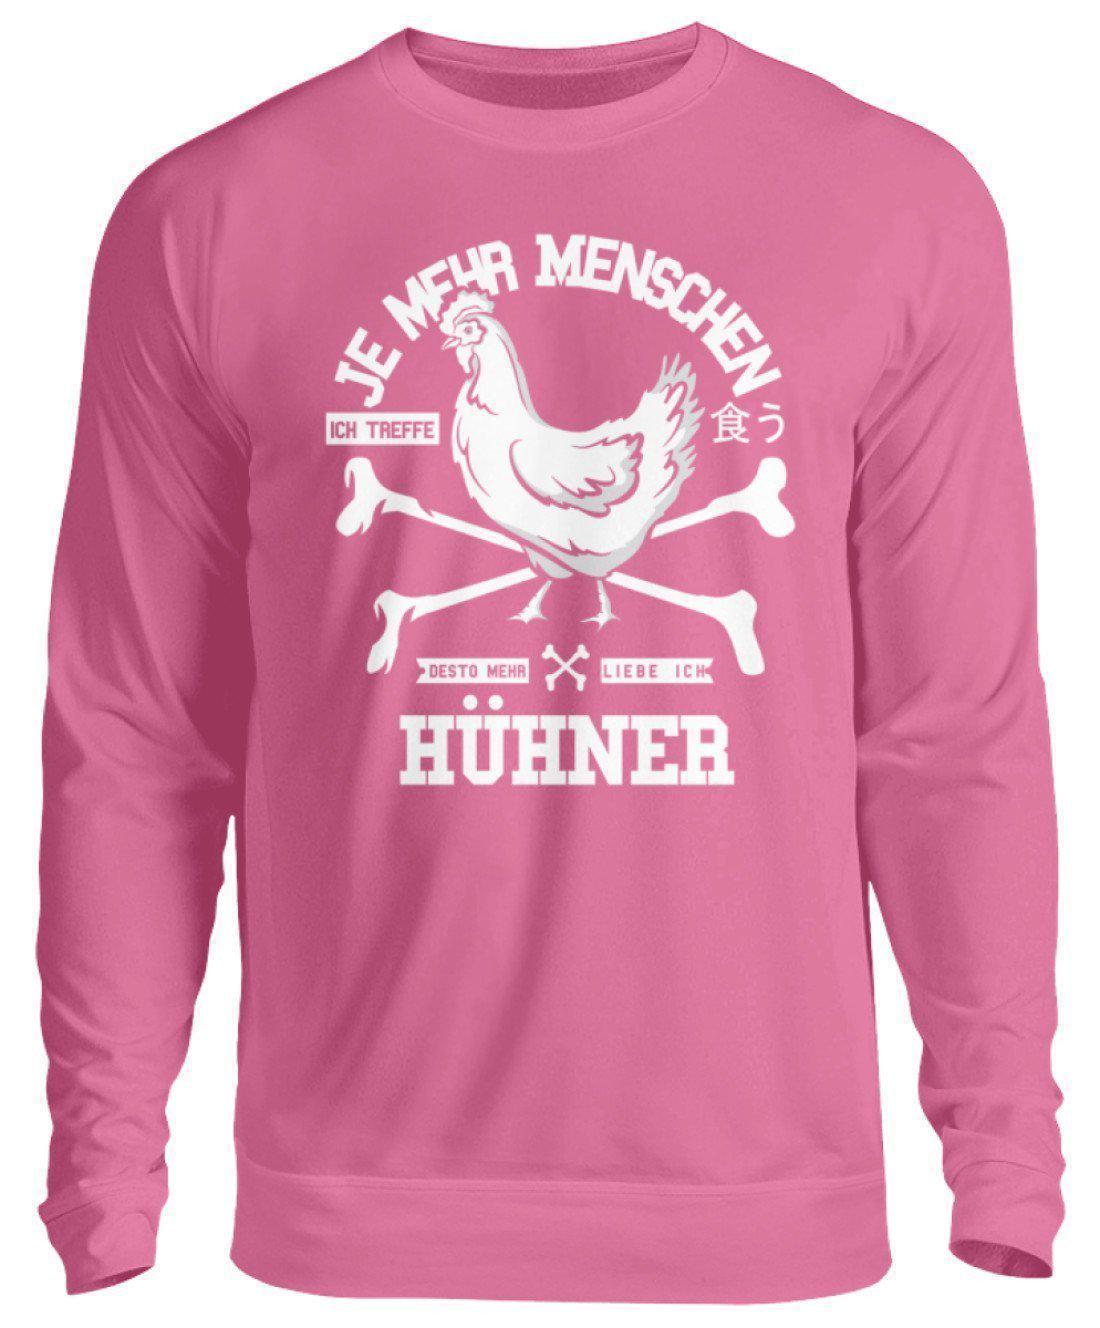 Desto mehr liebe ich Hühner · Unisex Sweatshirt Pullover-Unisex Sweatshirt-Candyfloss Pink-S-Agrarstarz